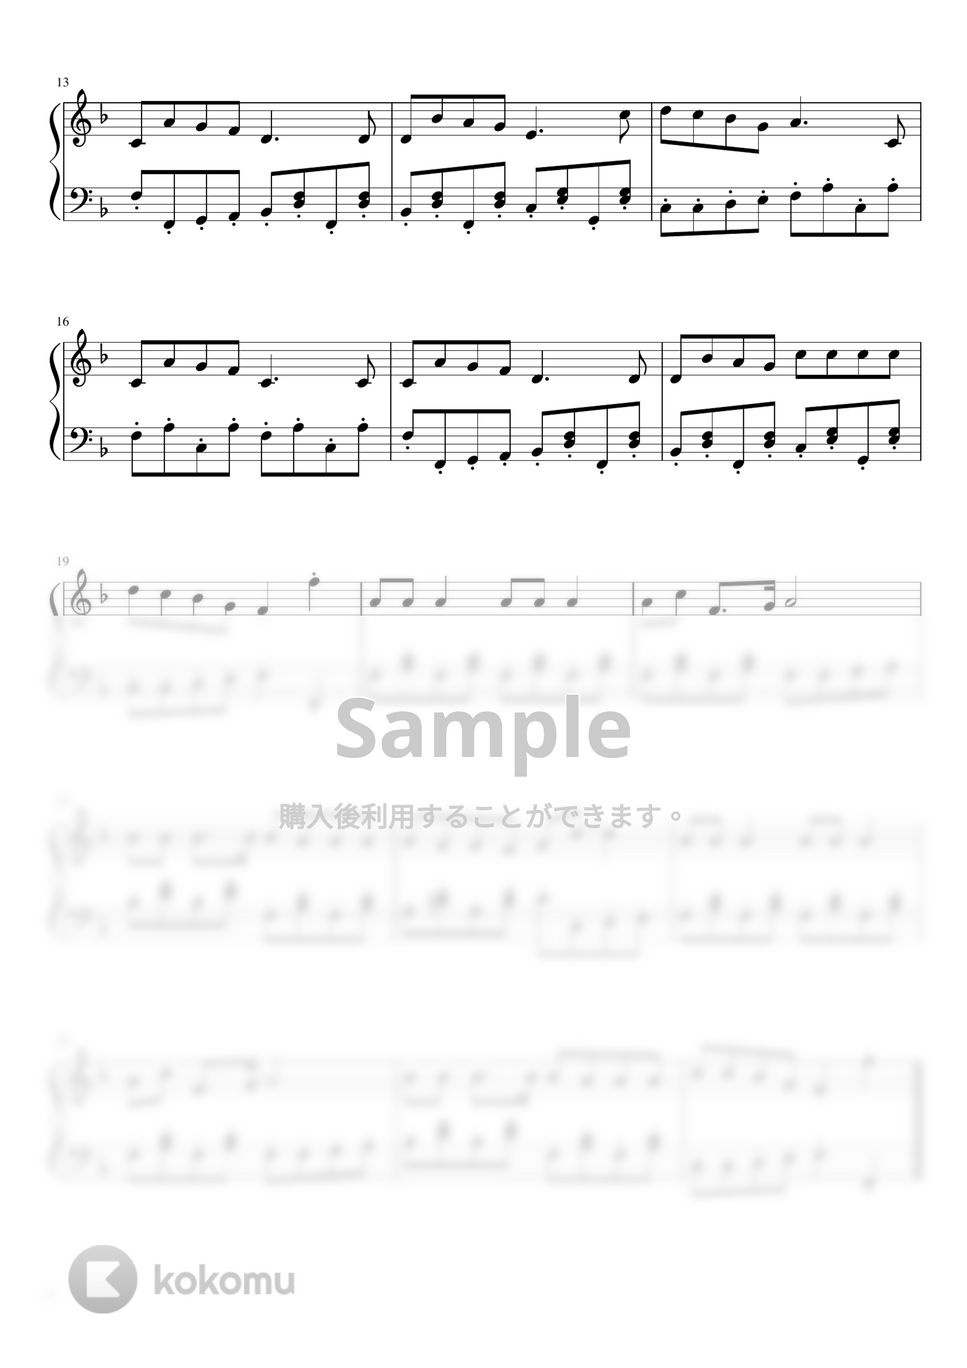 James  Lord Pierpont - ジングルベル (ピアノソロ初中級) by pianon